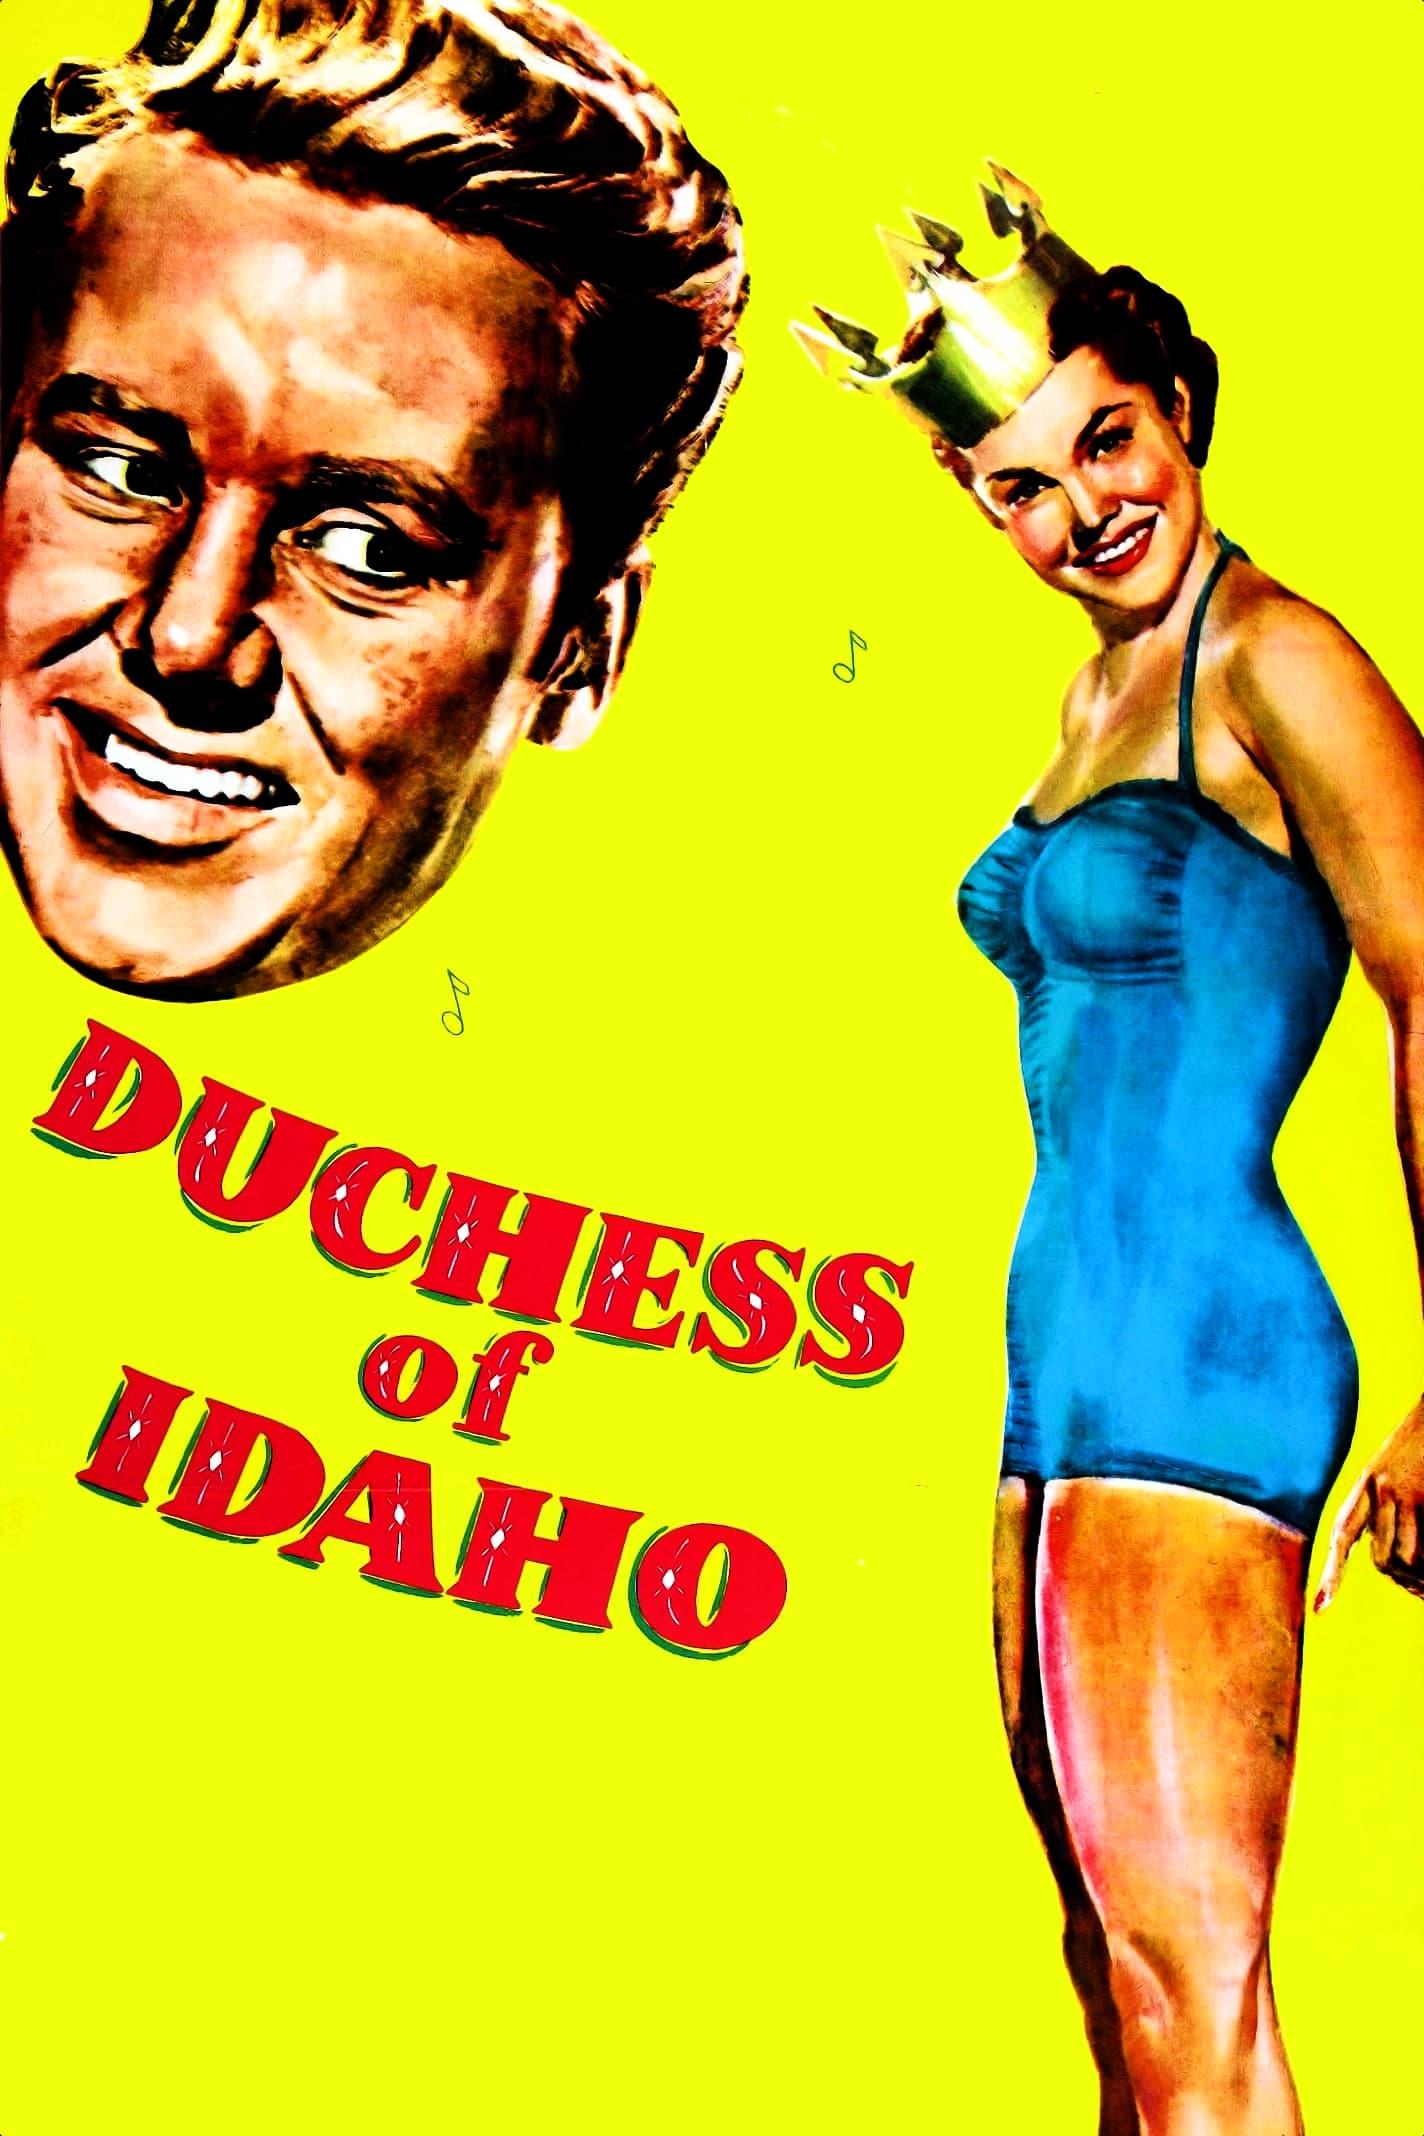 Duchess of Idaho poster